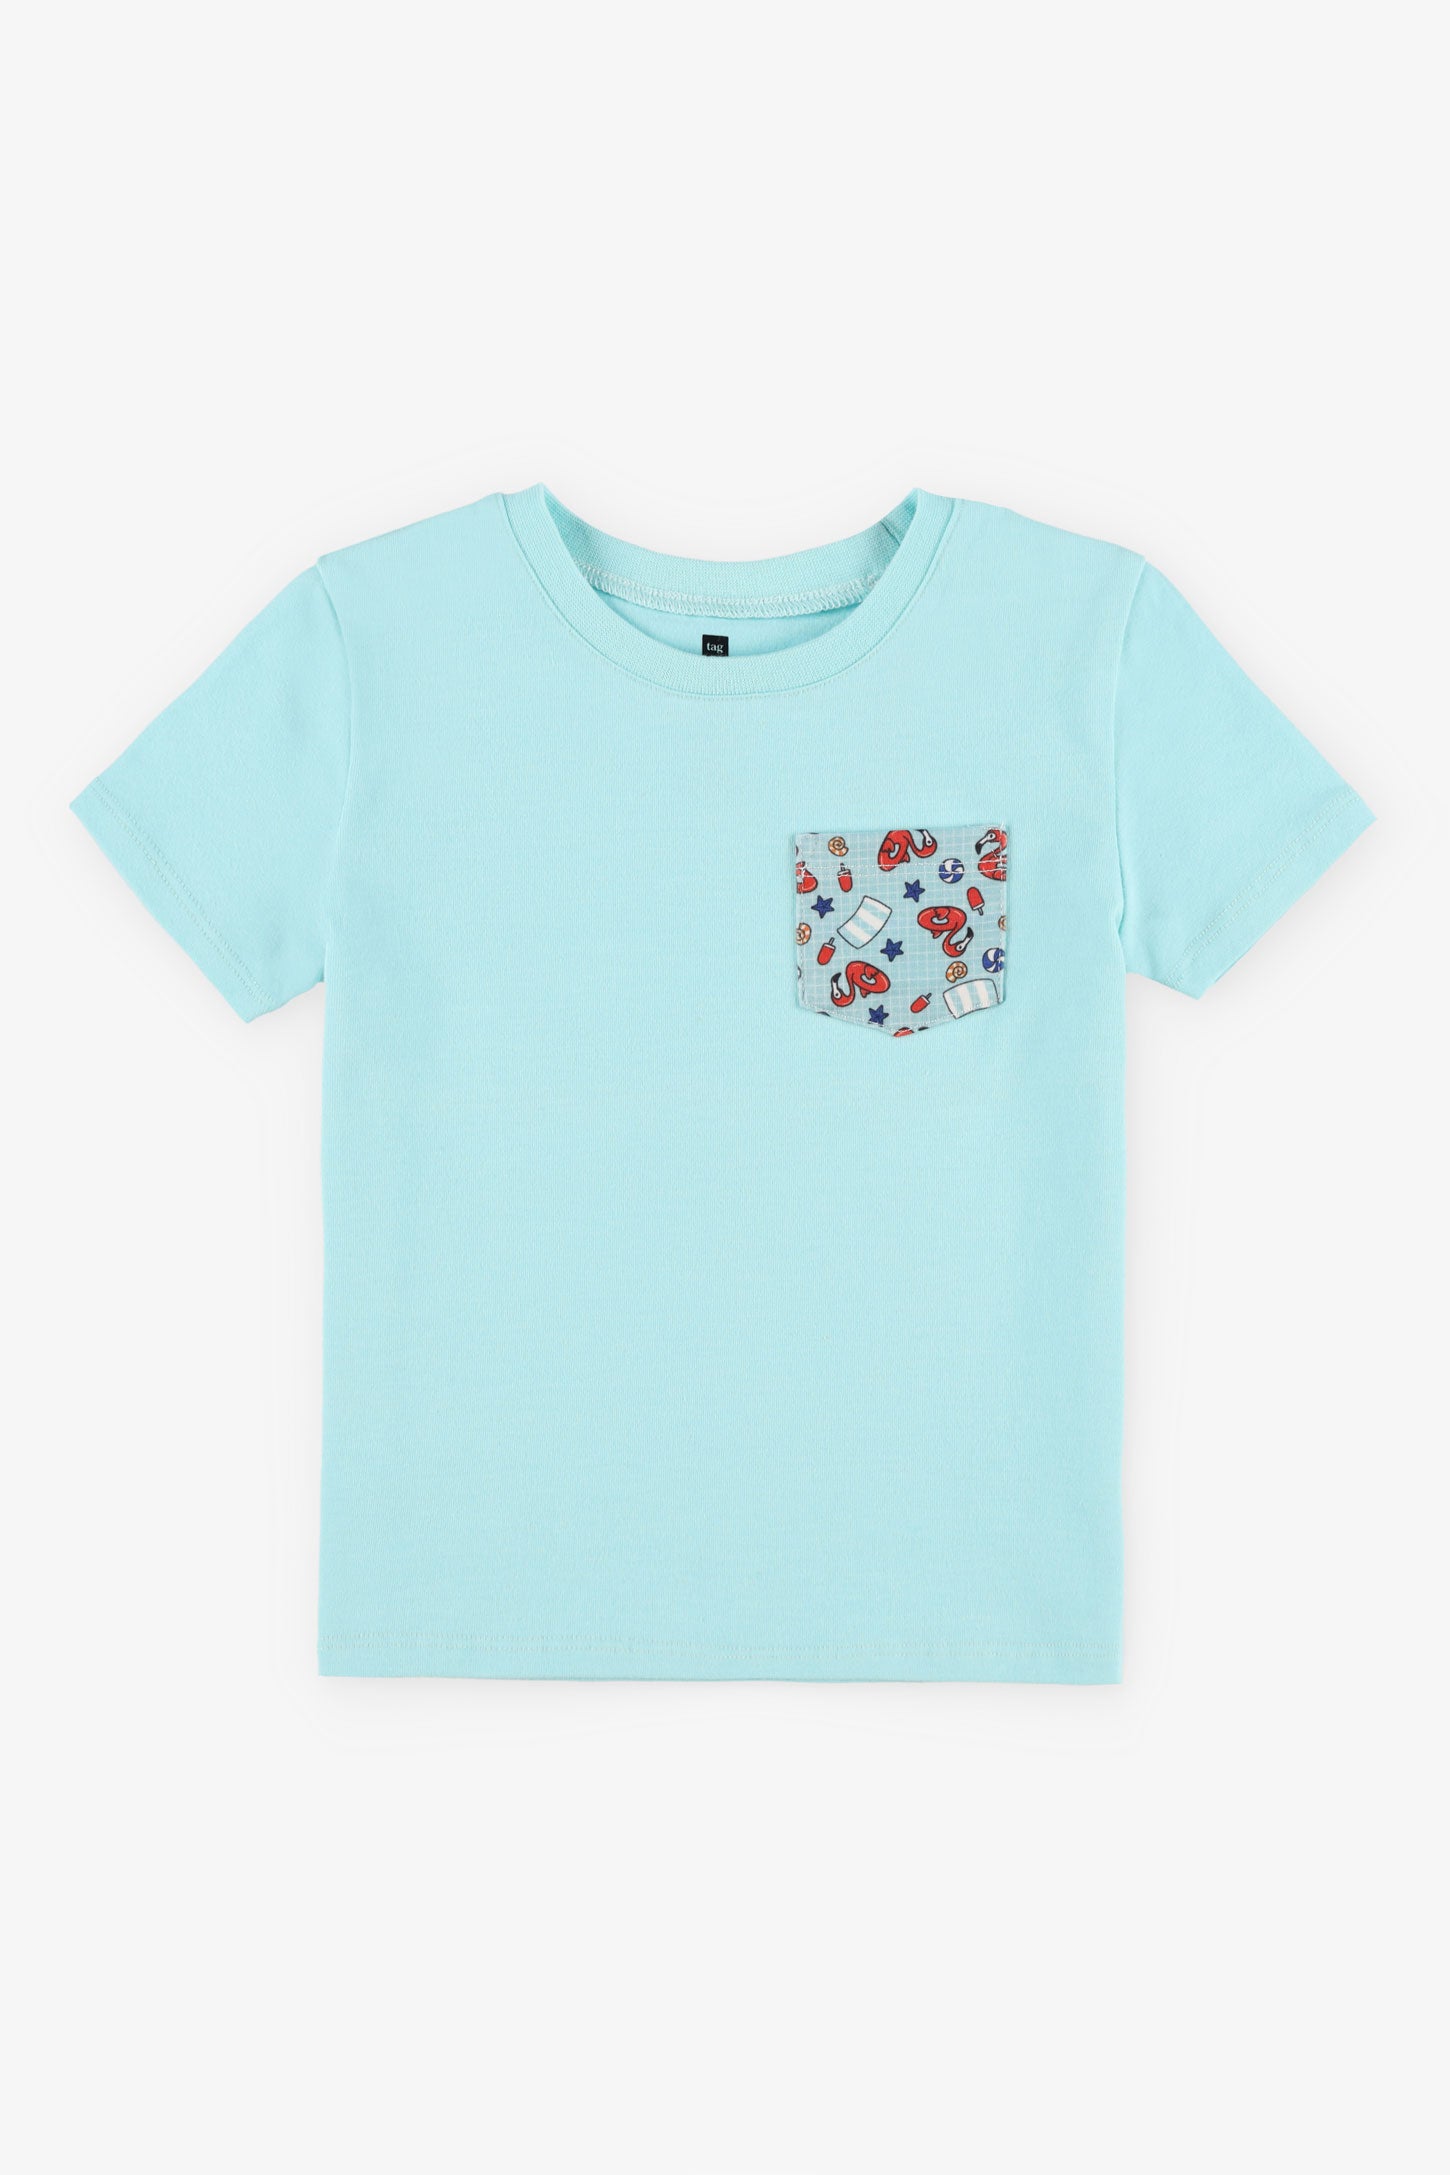 T-shirt col rond coupe droite coton, 2/15$ - Bébé garçon && TURQUOISE